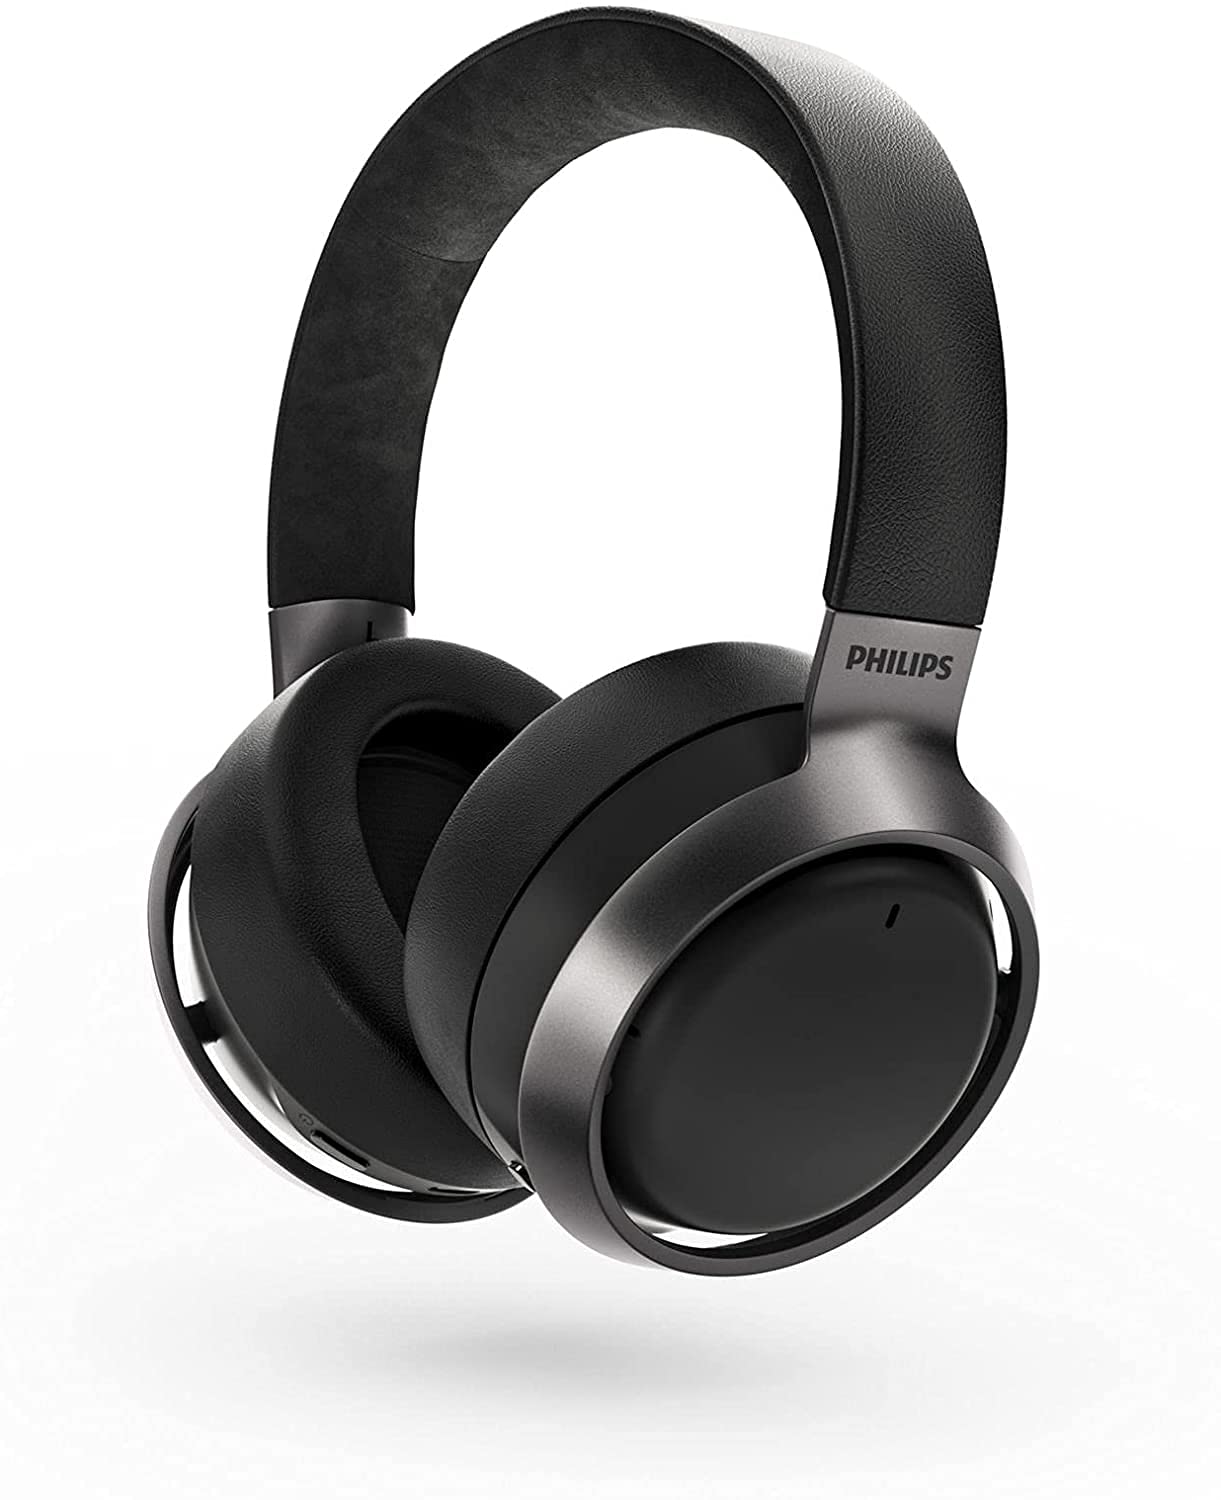 Philips Audio Flagowe bezprzewodowe słuchawki nauszne Philips Fidelio L3 z aktywną redukcją szumów Pro+ (ANC) i wielopunktowym połączeniem Bluetooth